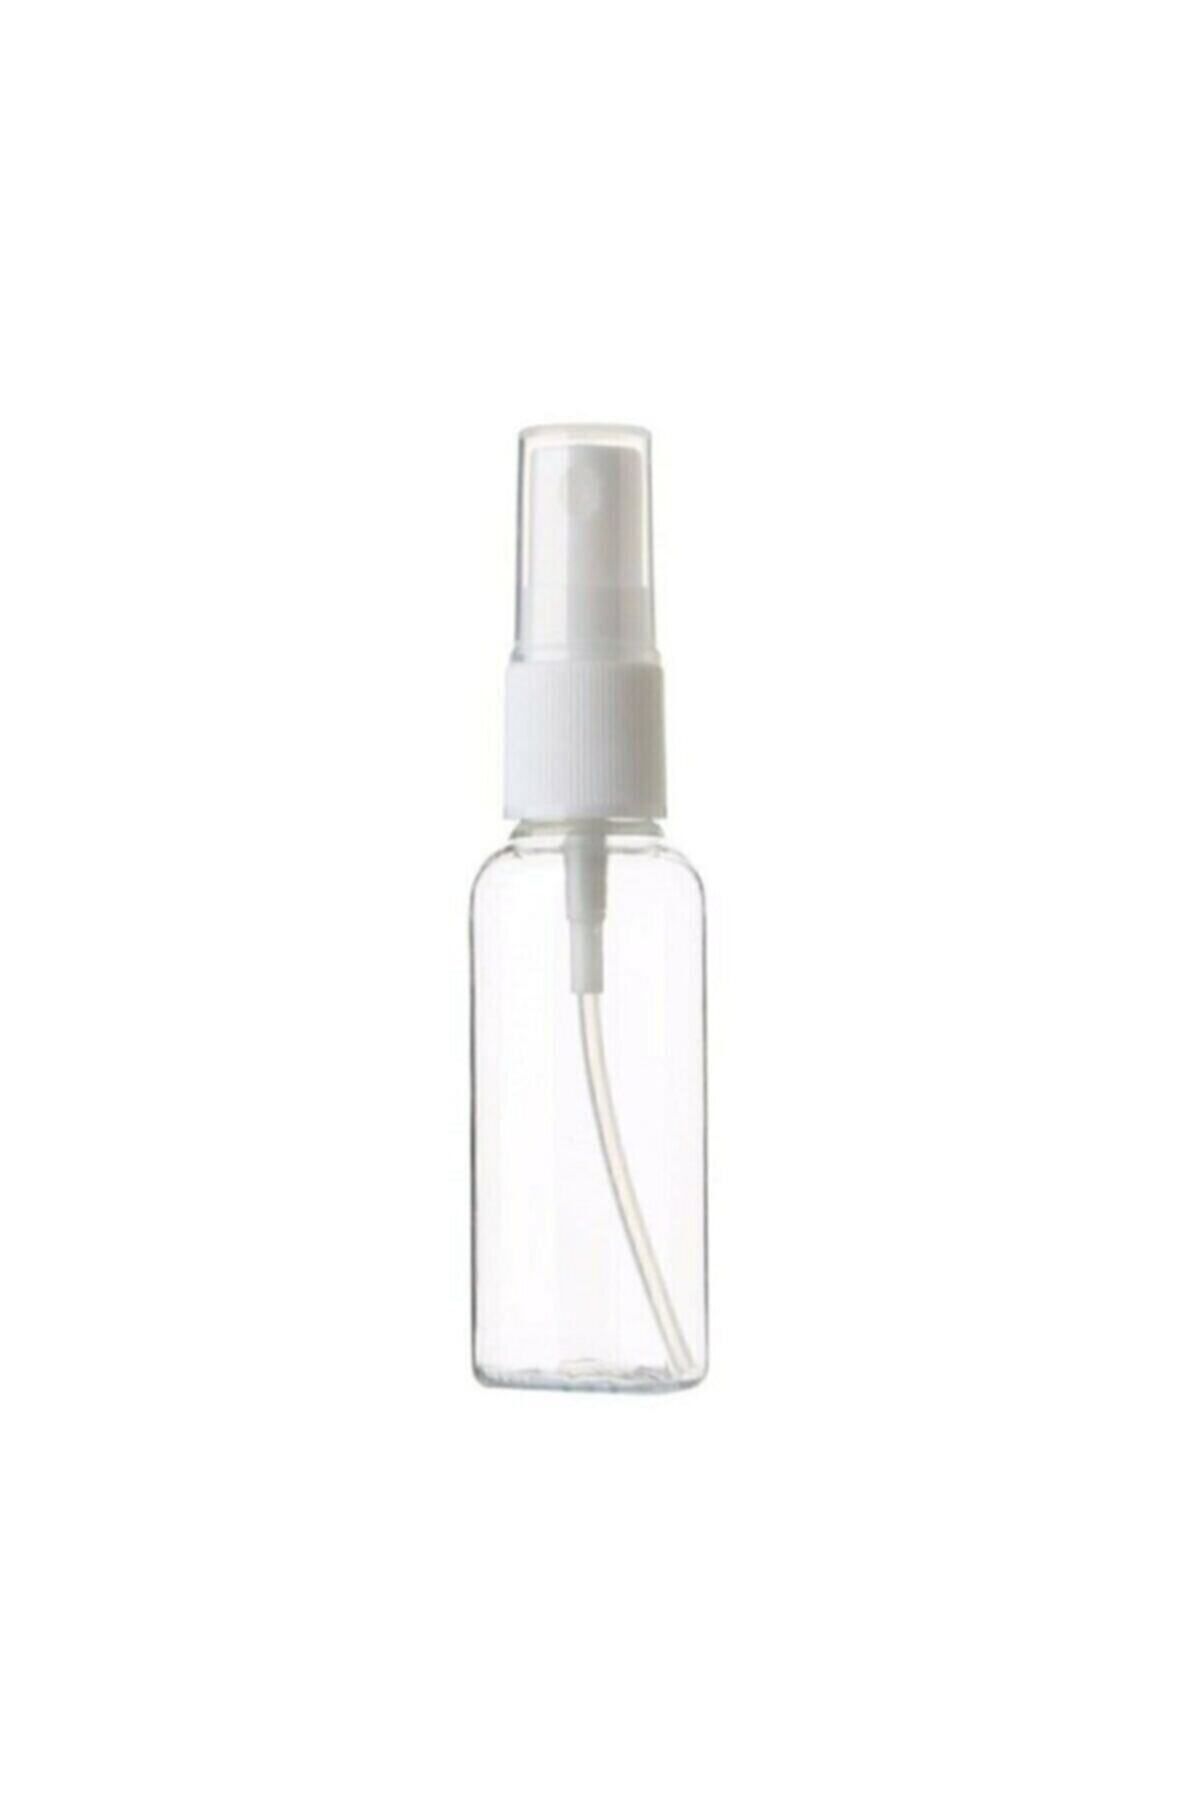 JULIANO 100 Adet Boş Şişe Spreyli Kolonya Şişesi Doldurulabilir Cep Plastik Parfüm Şişesi 30 ml